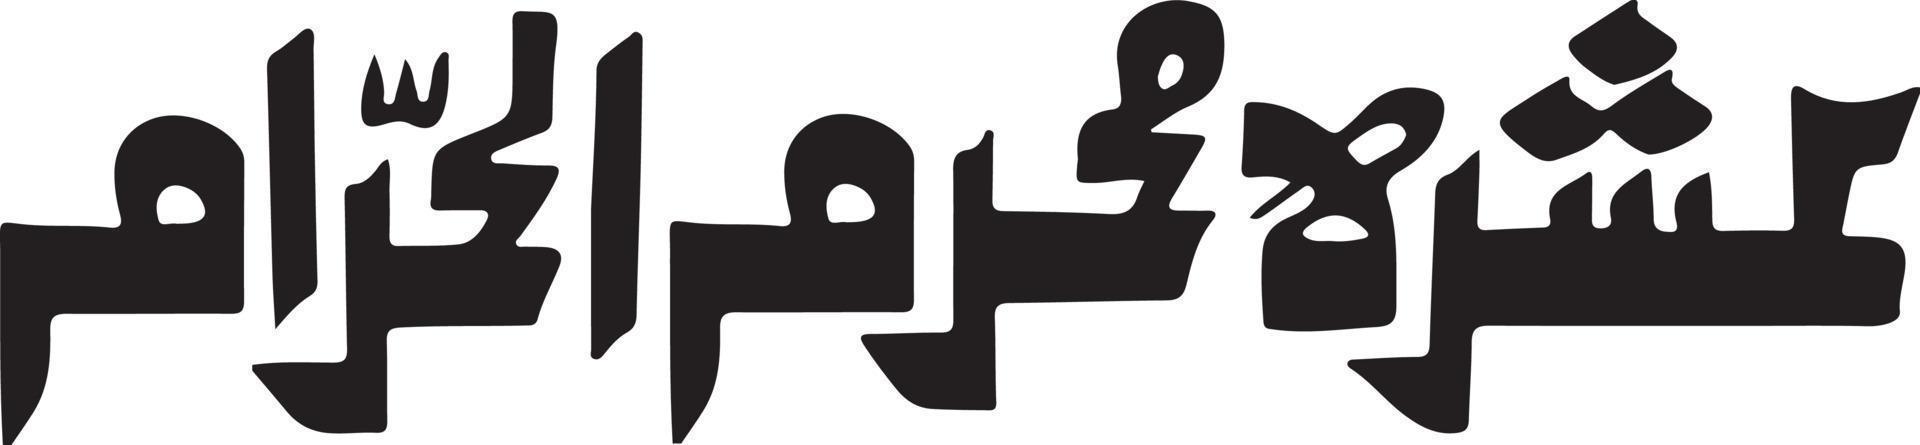 ashra muharm al haram titel islamic urdu arabicum kalligrafi fri vektor